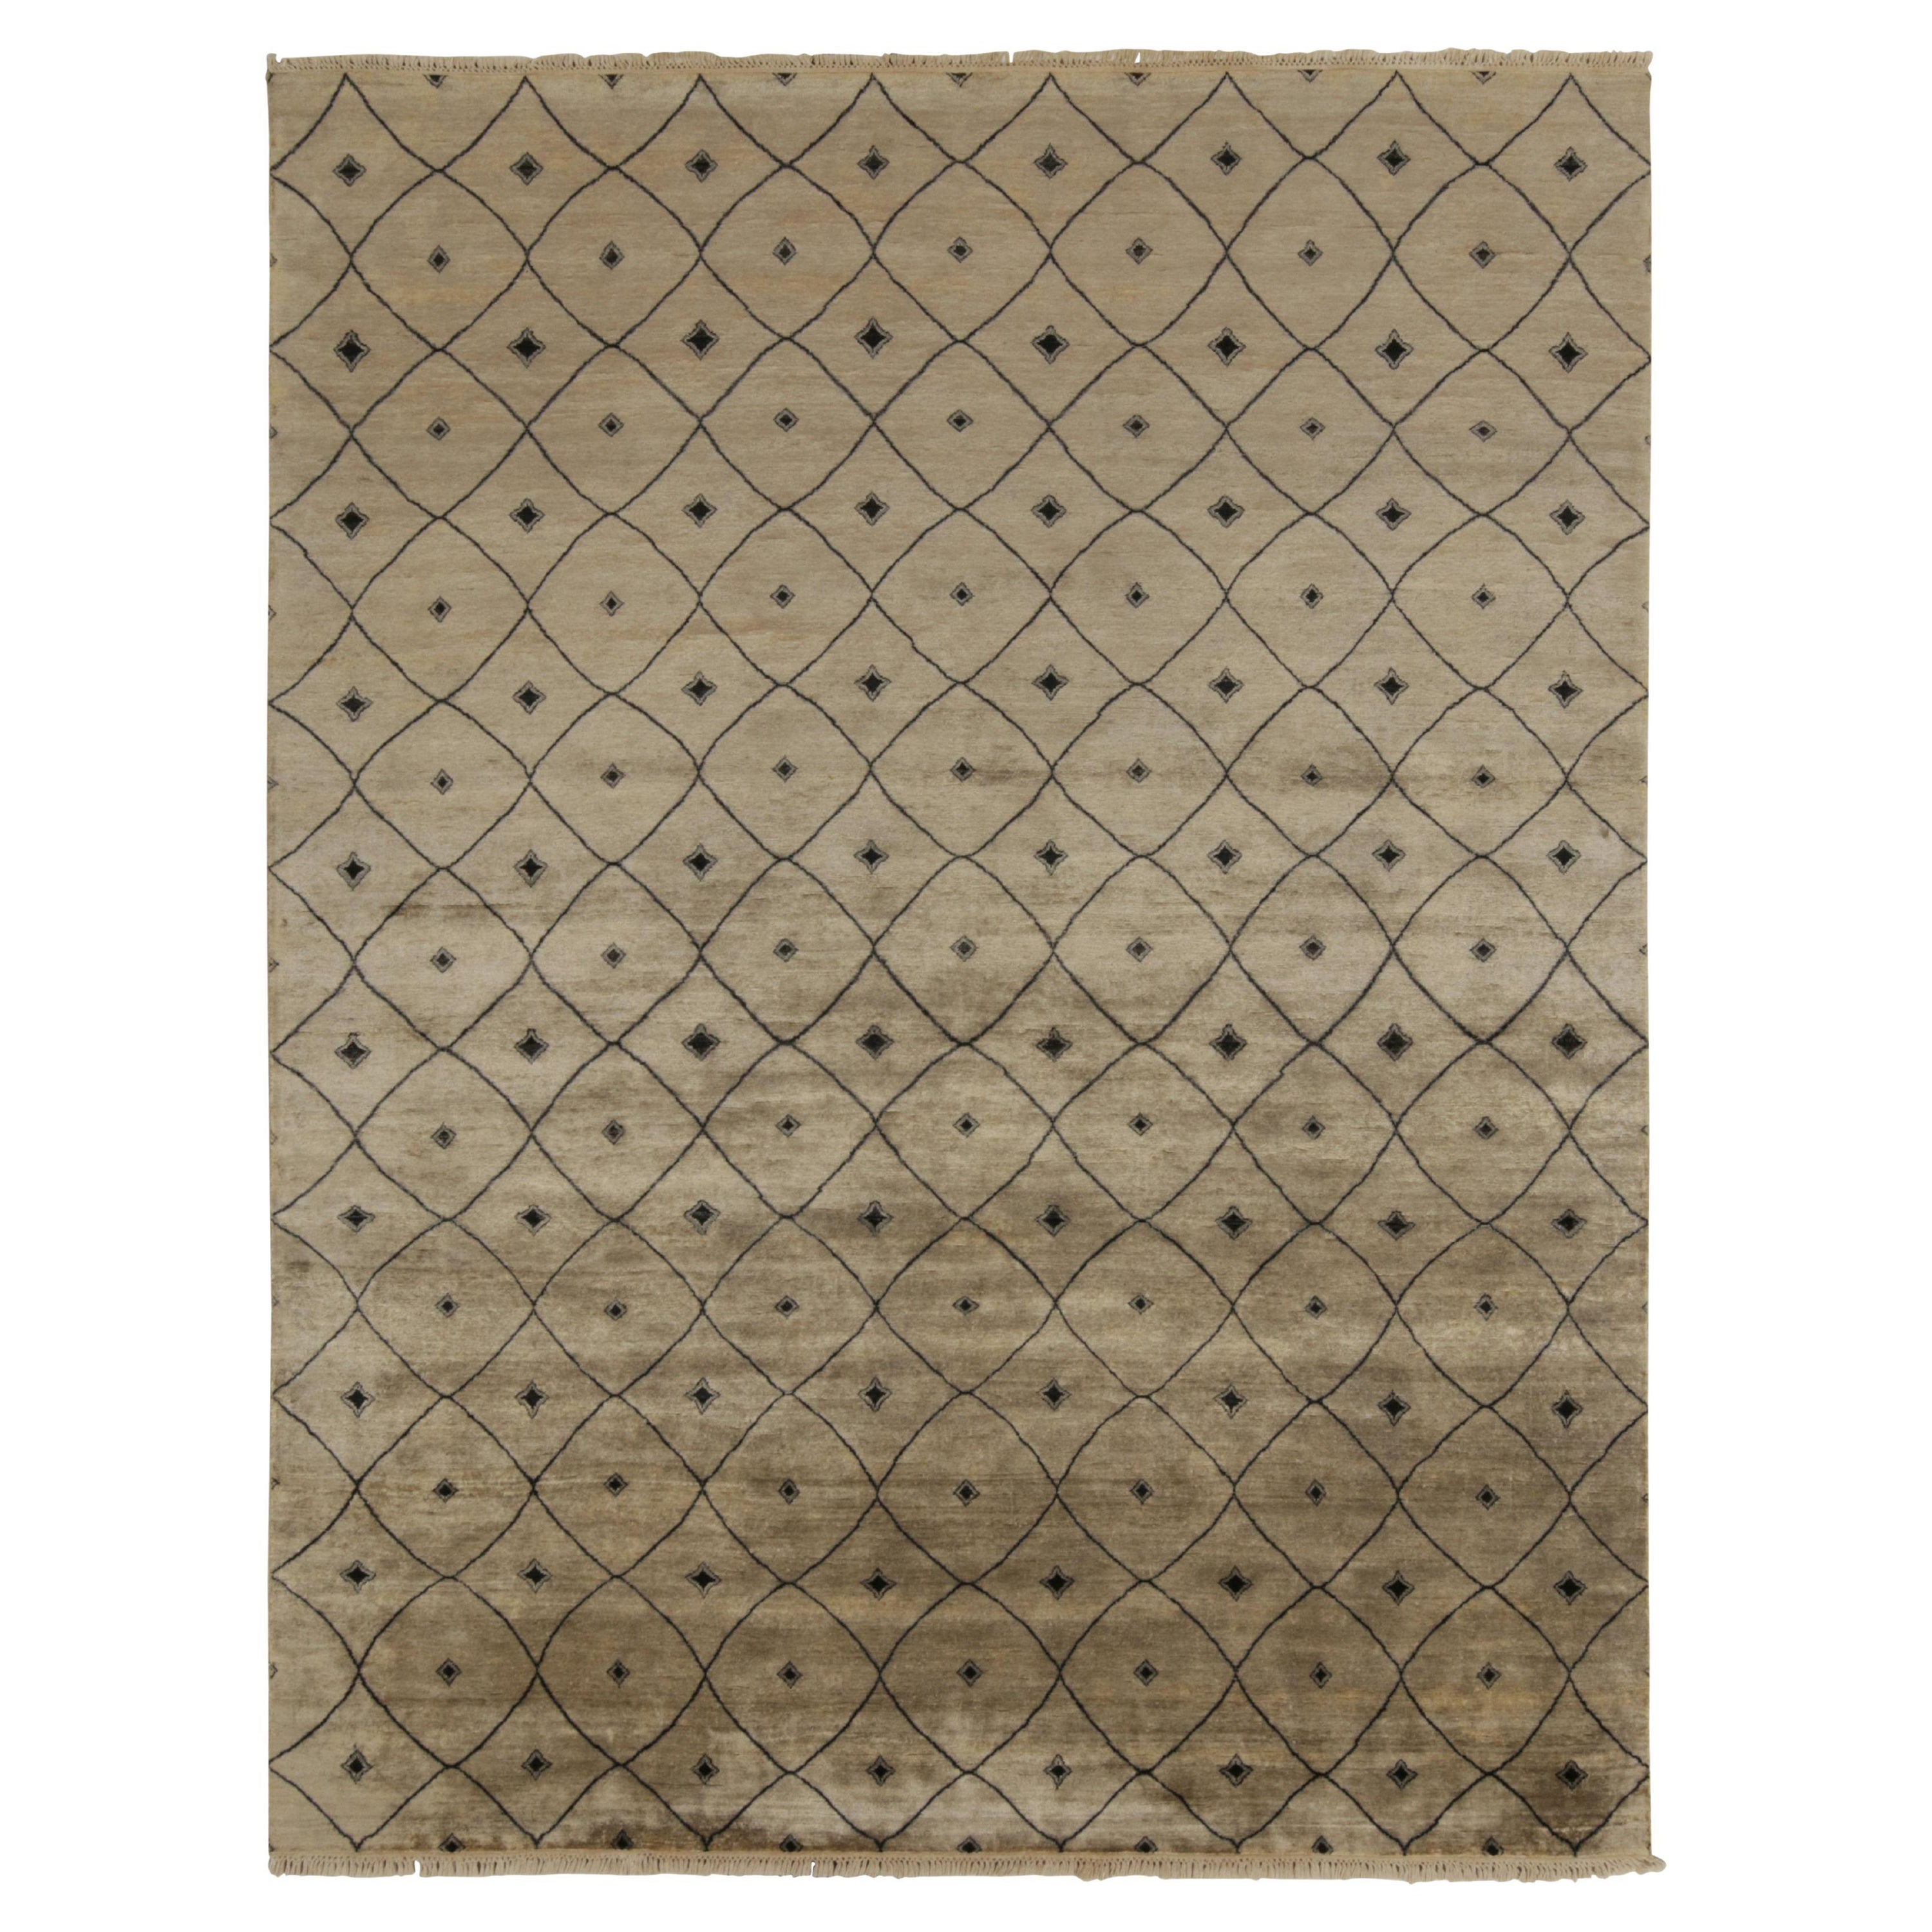 Marokkanischer Teppich von Rug & Kilim in Beige-Braun mit schwarzem Gittermuster